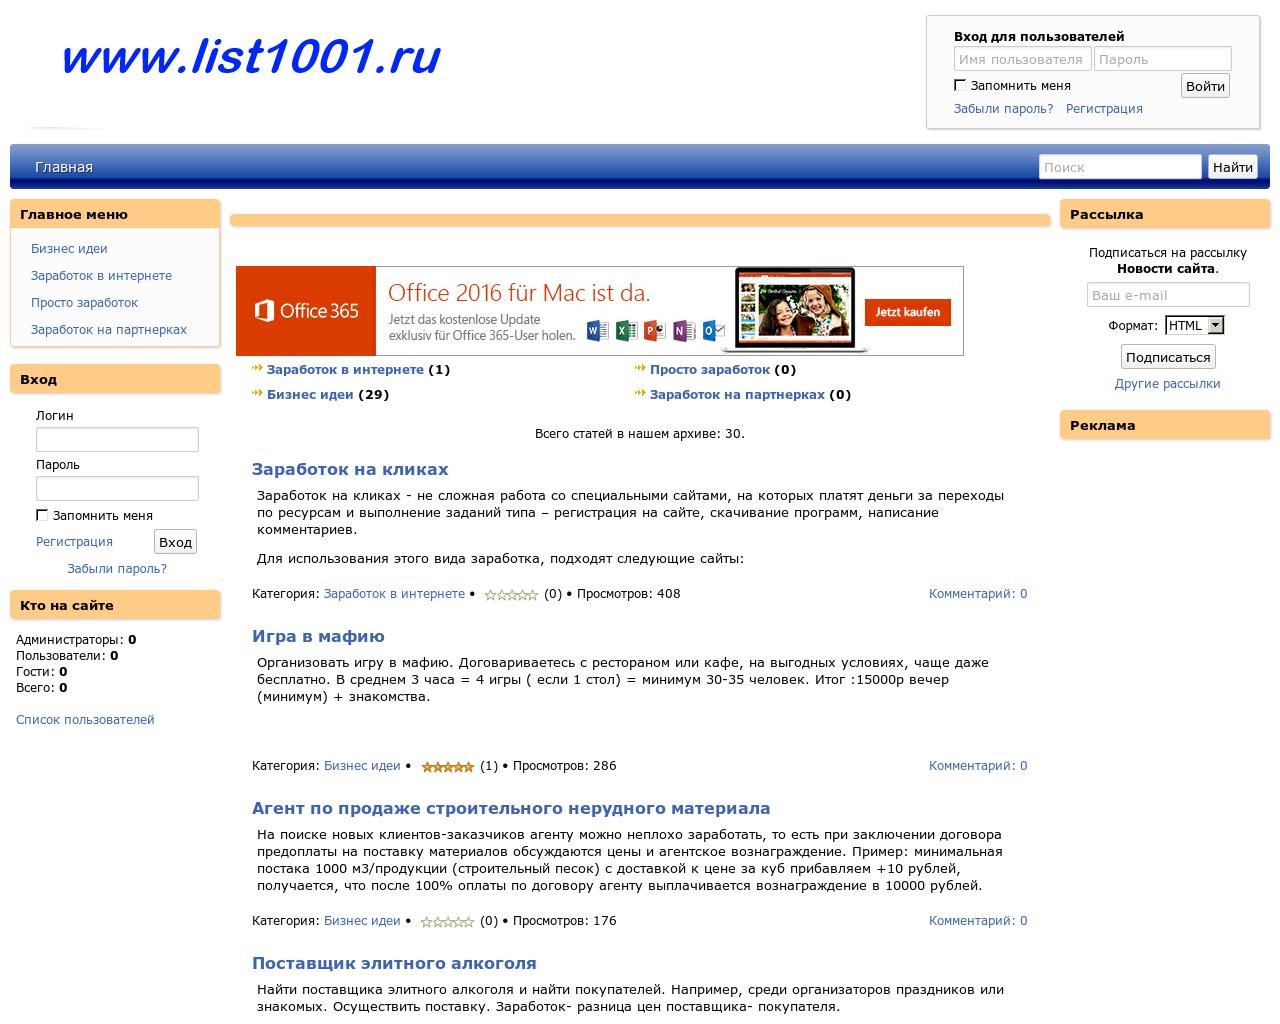 Изображение сайта list1001.ru в разрешении 1280x1024